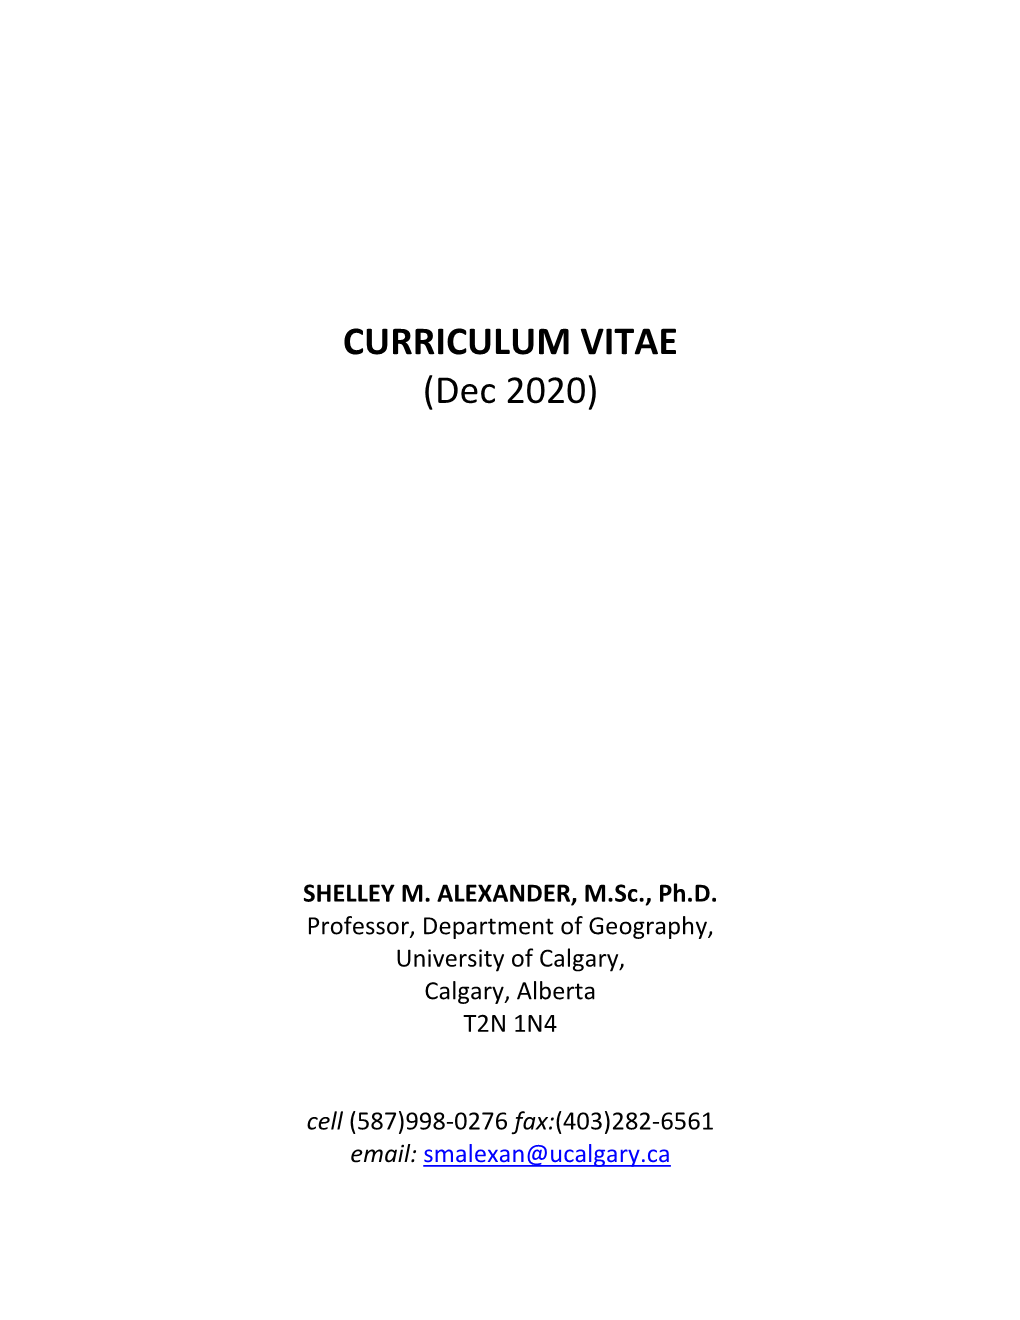 CURRICULUM VITAE (Dec 2020)